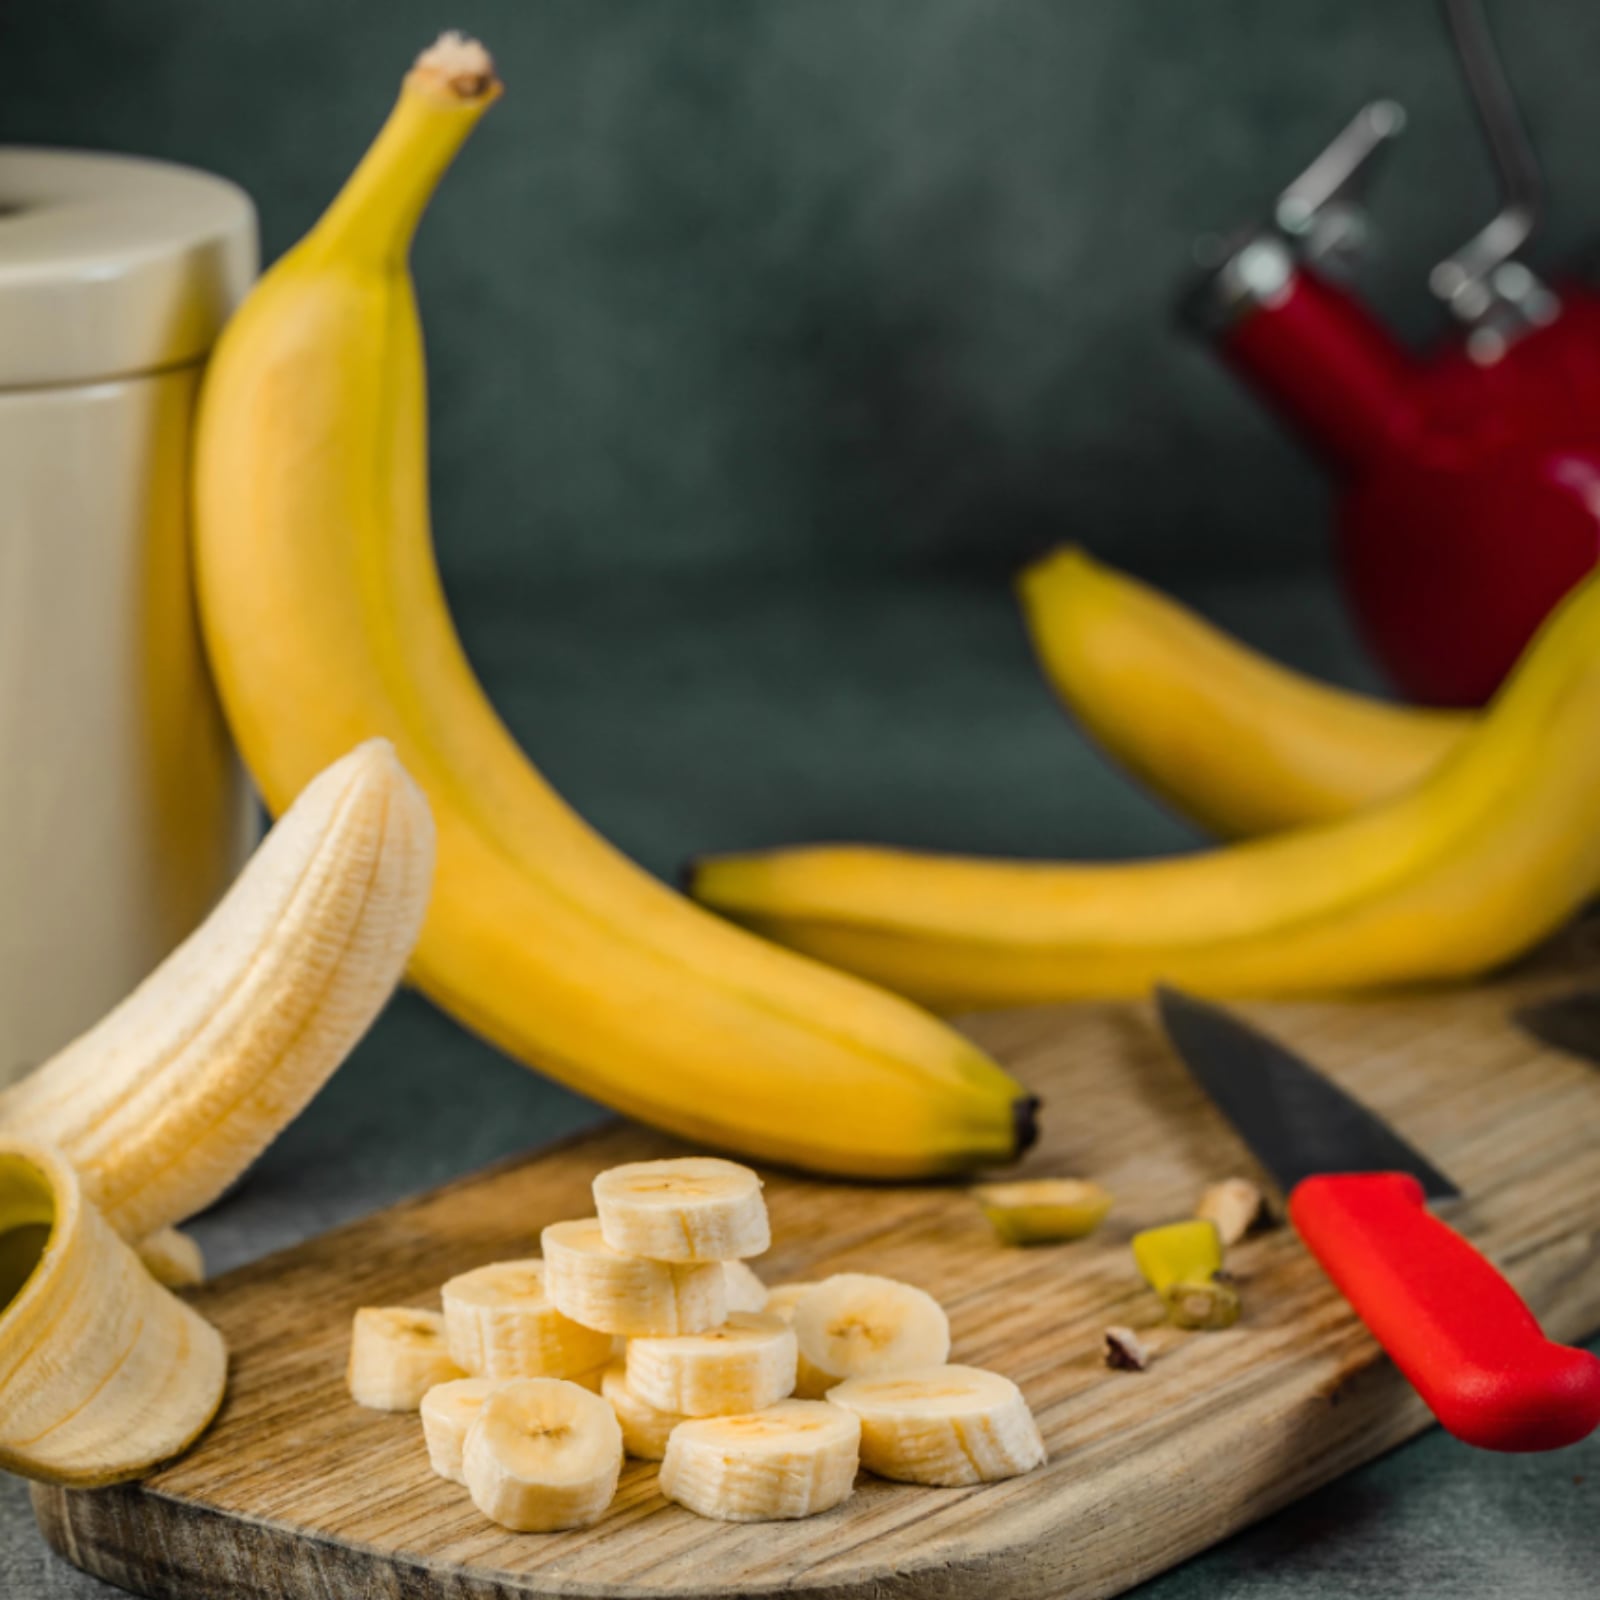 How To Defrost Frozen Bananas?